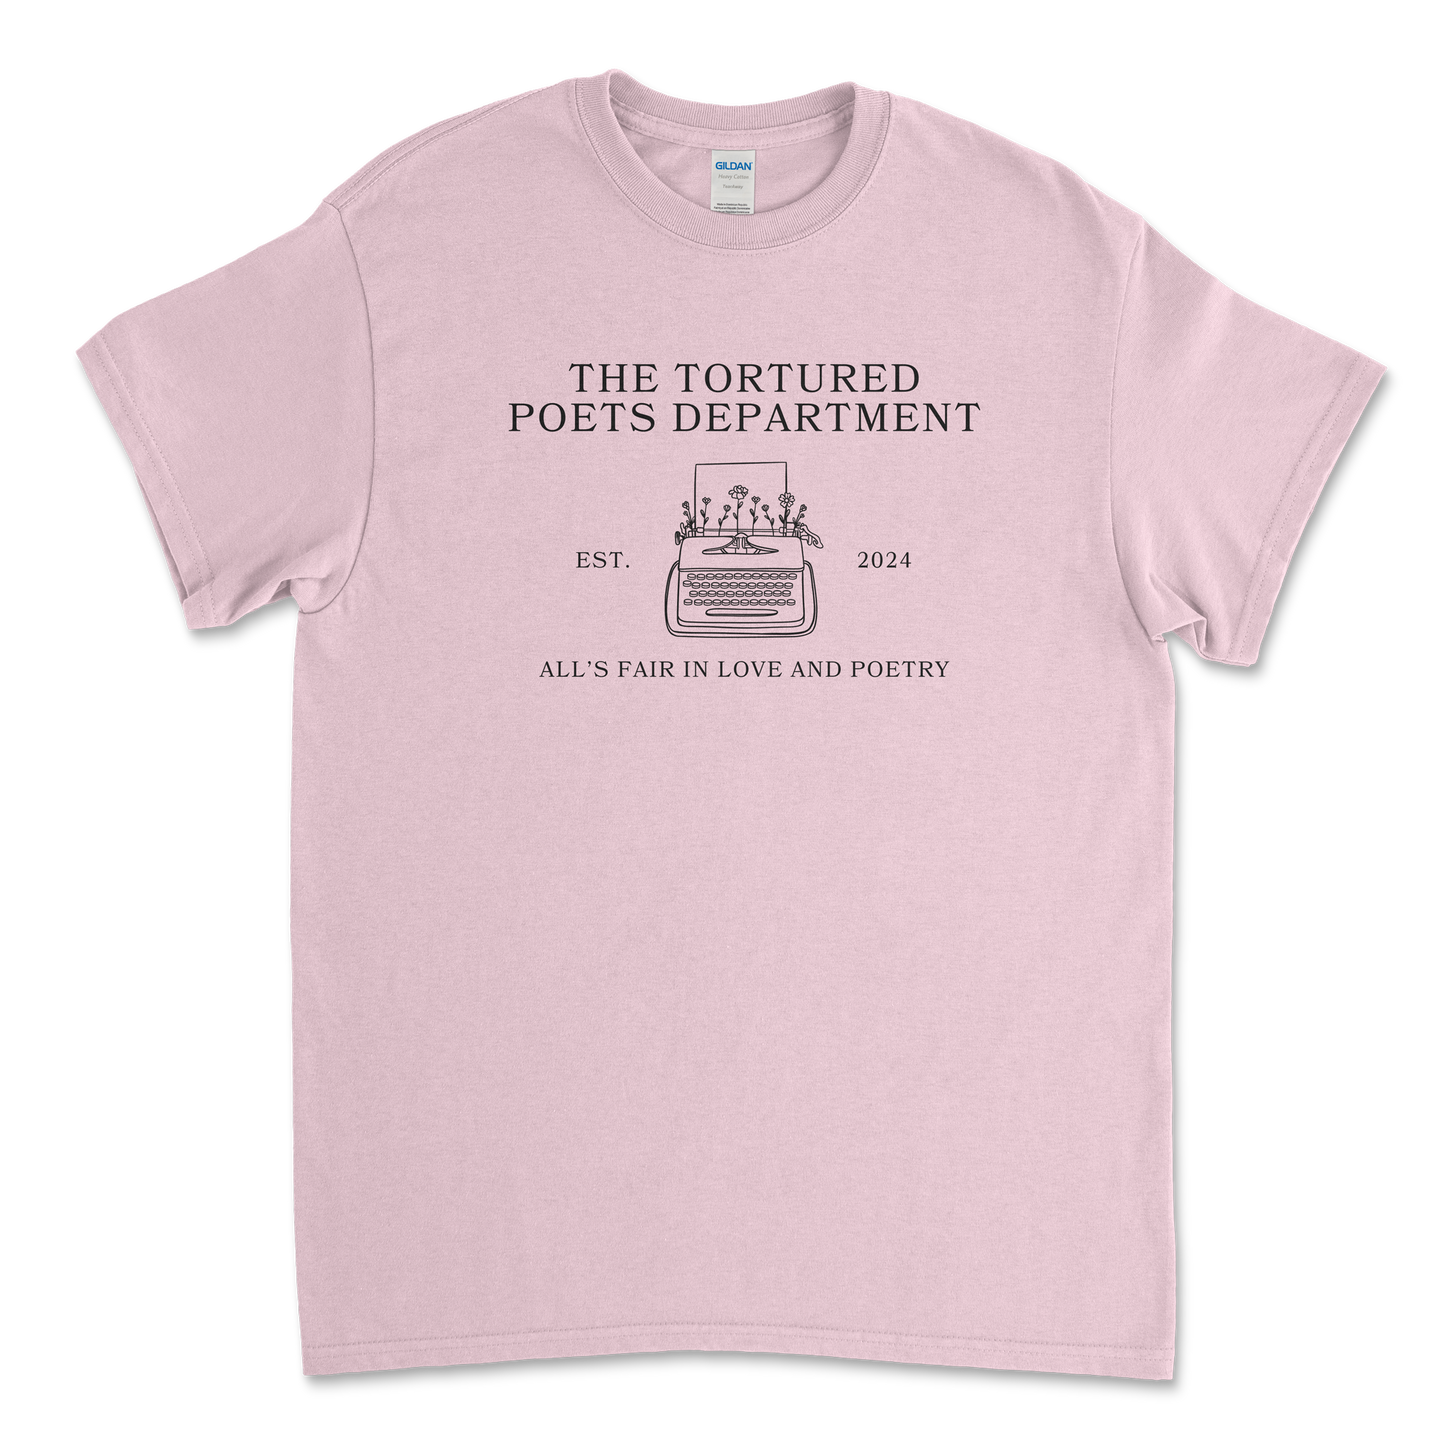 TTPD Typewriter T-Shirt